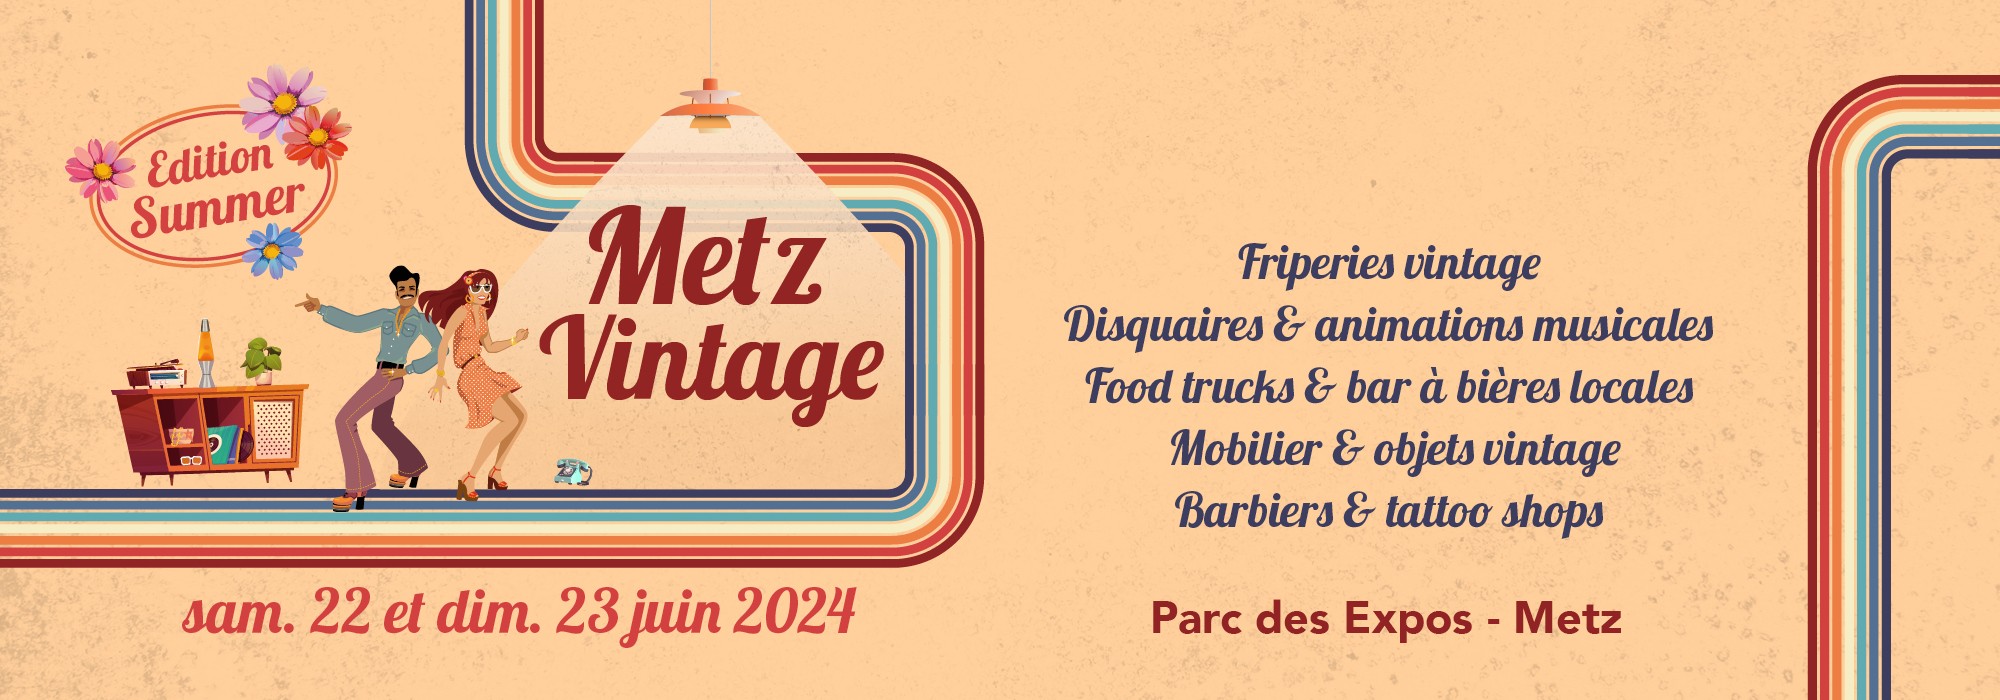 Metz-vintage